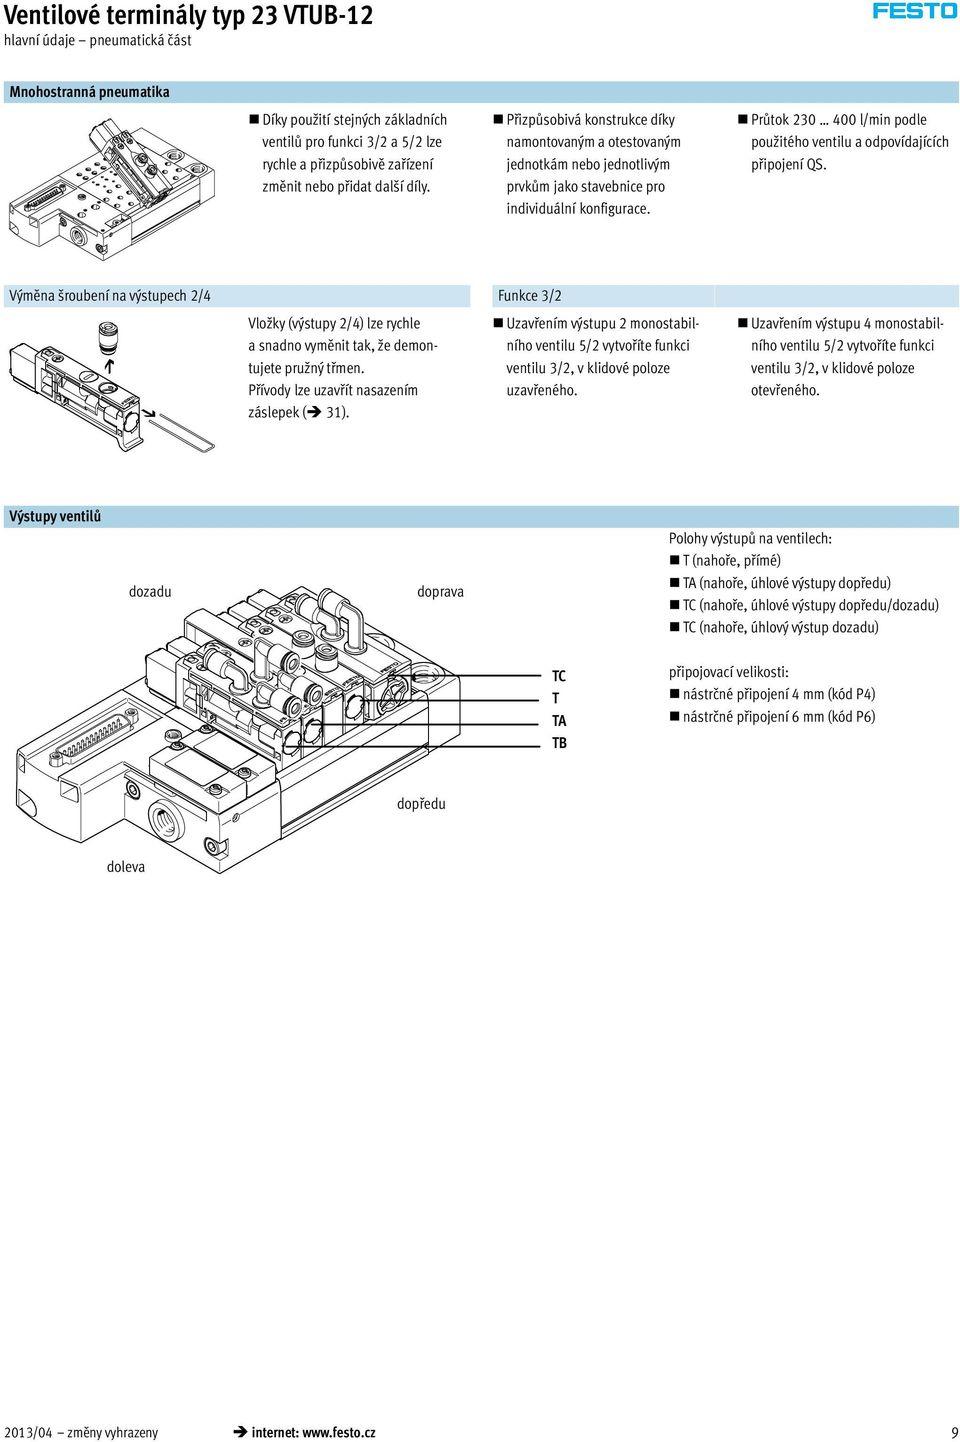 Průtok 230 400 l/min podle použitého ventilu a odpovídajících připojení QS.